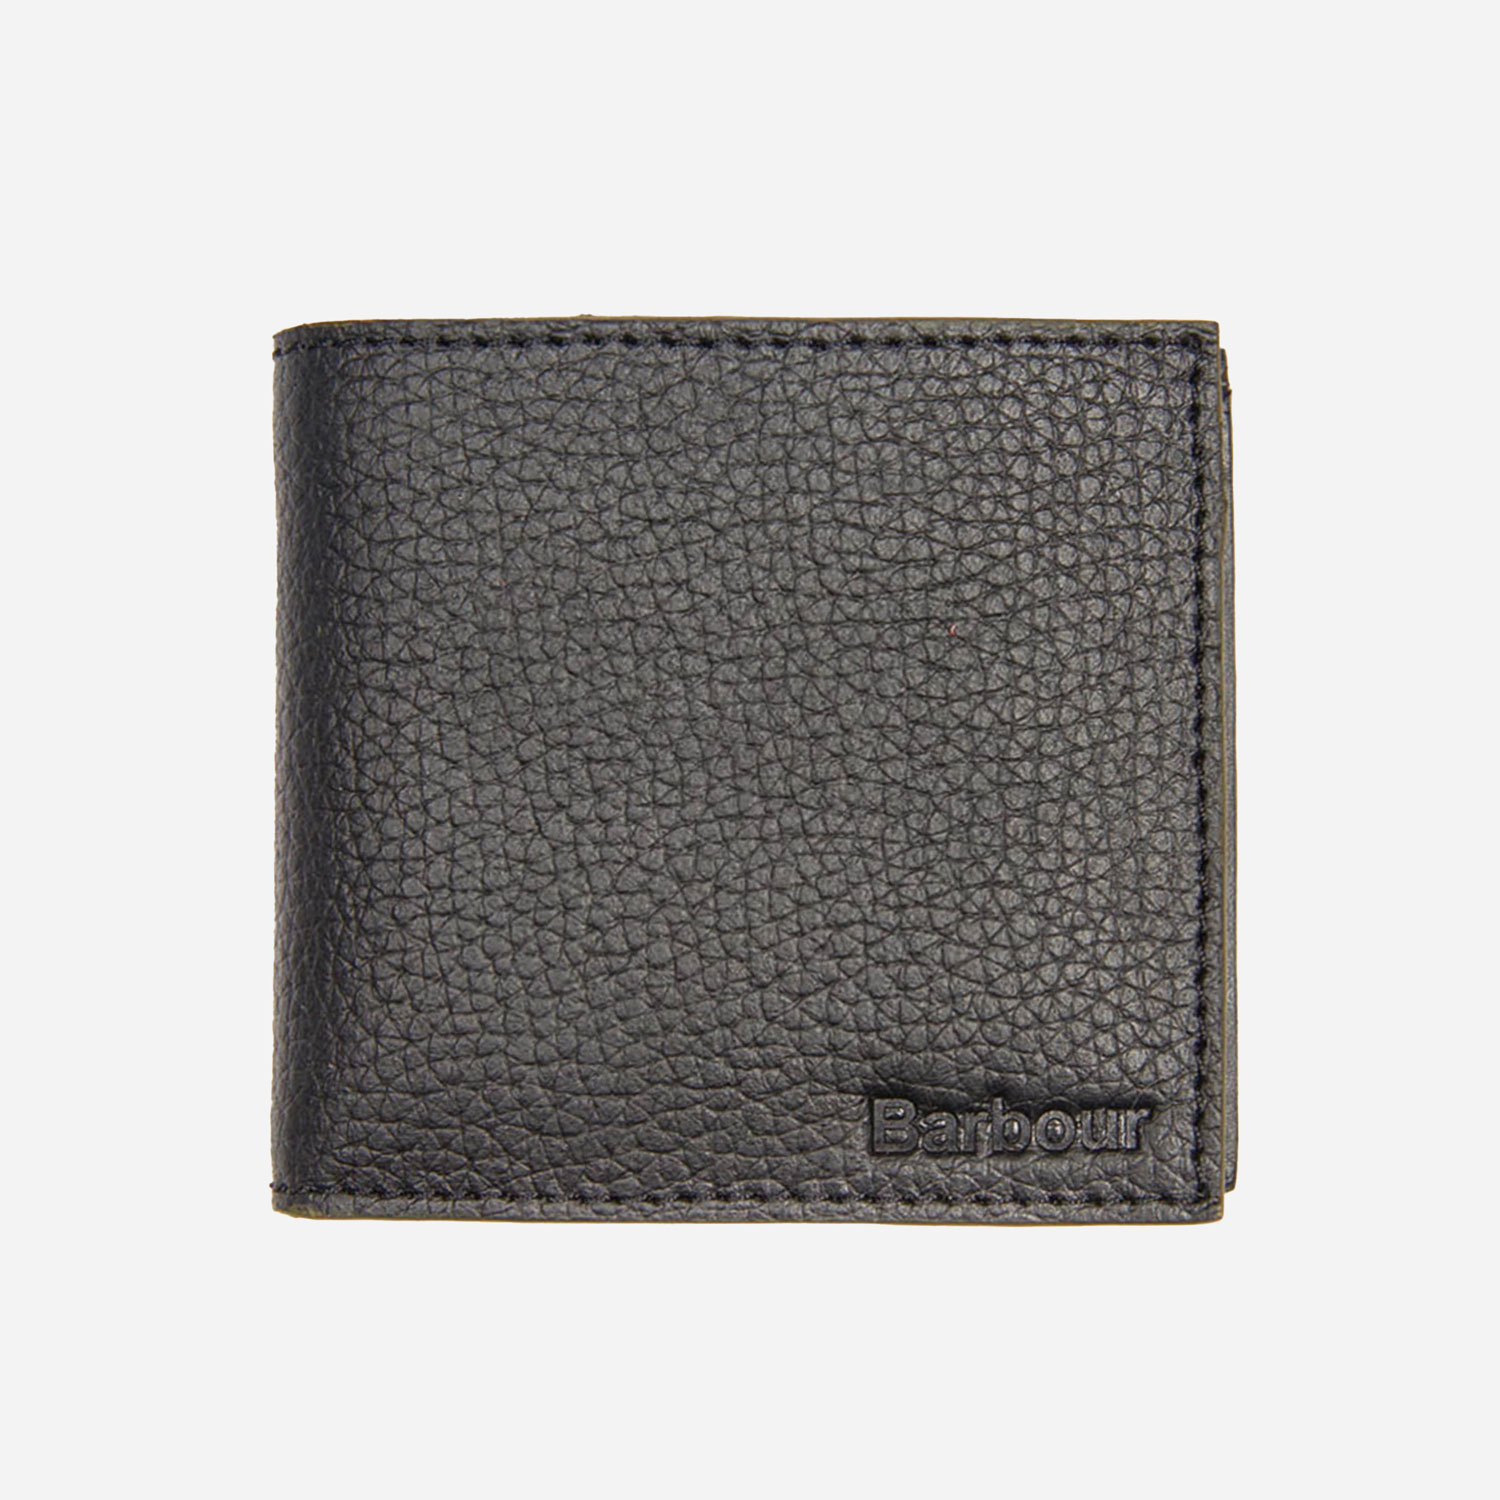 Barbour Grain Leather Wallet - Black